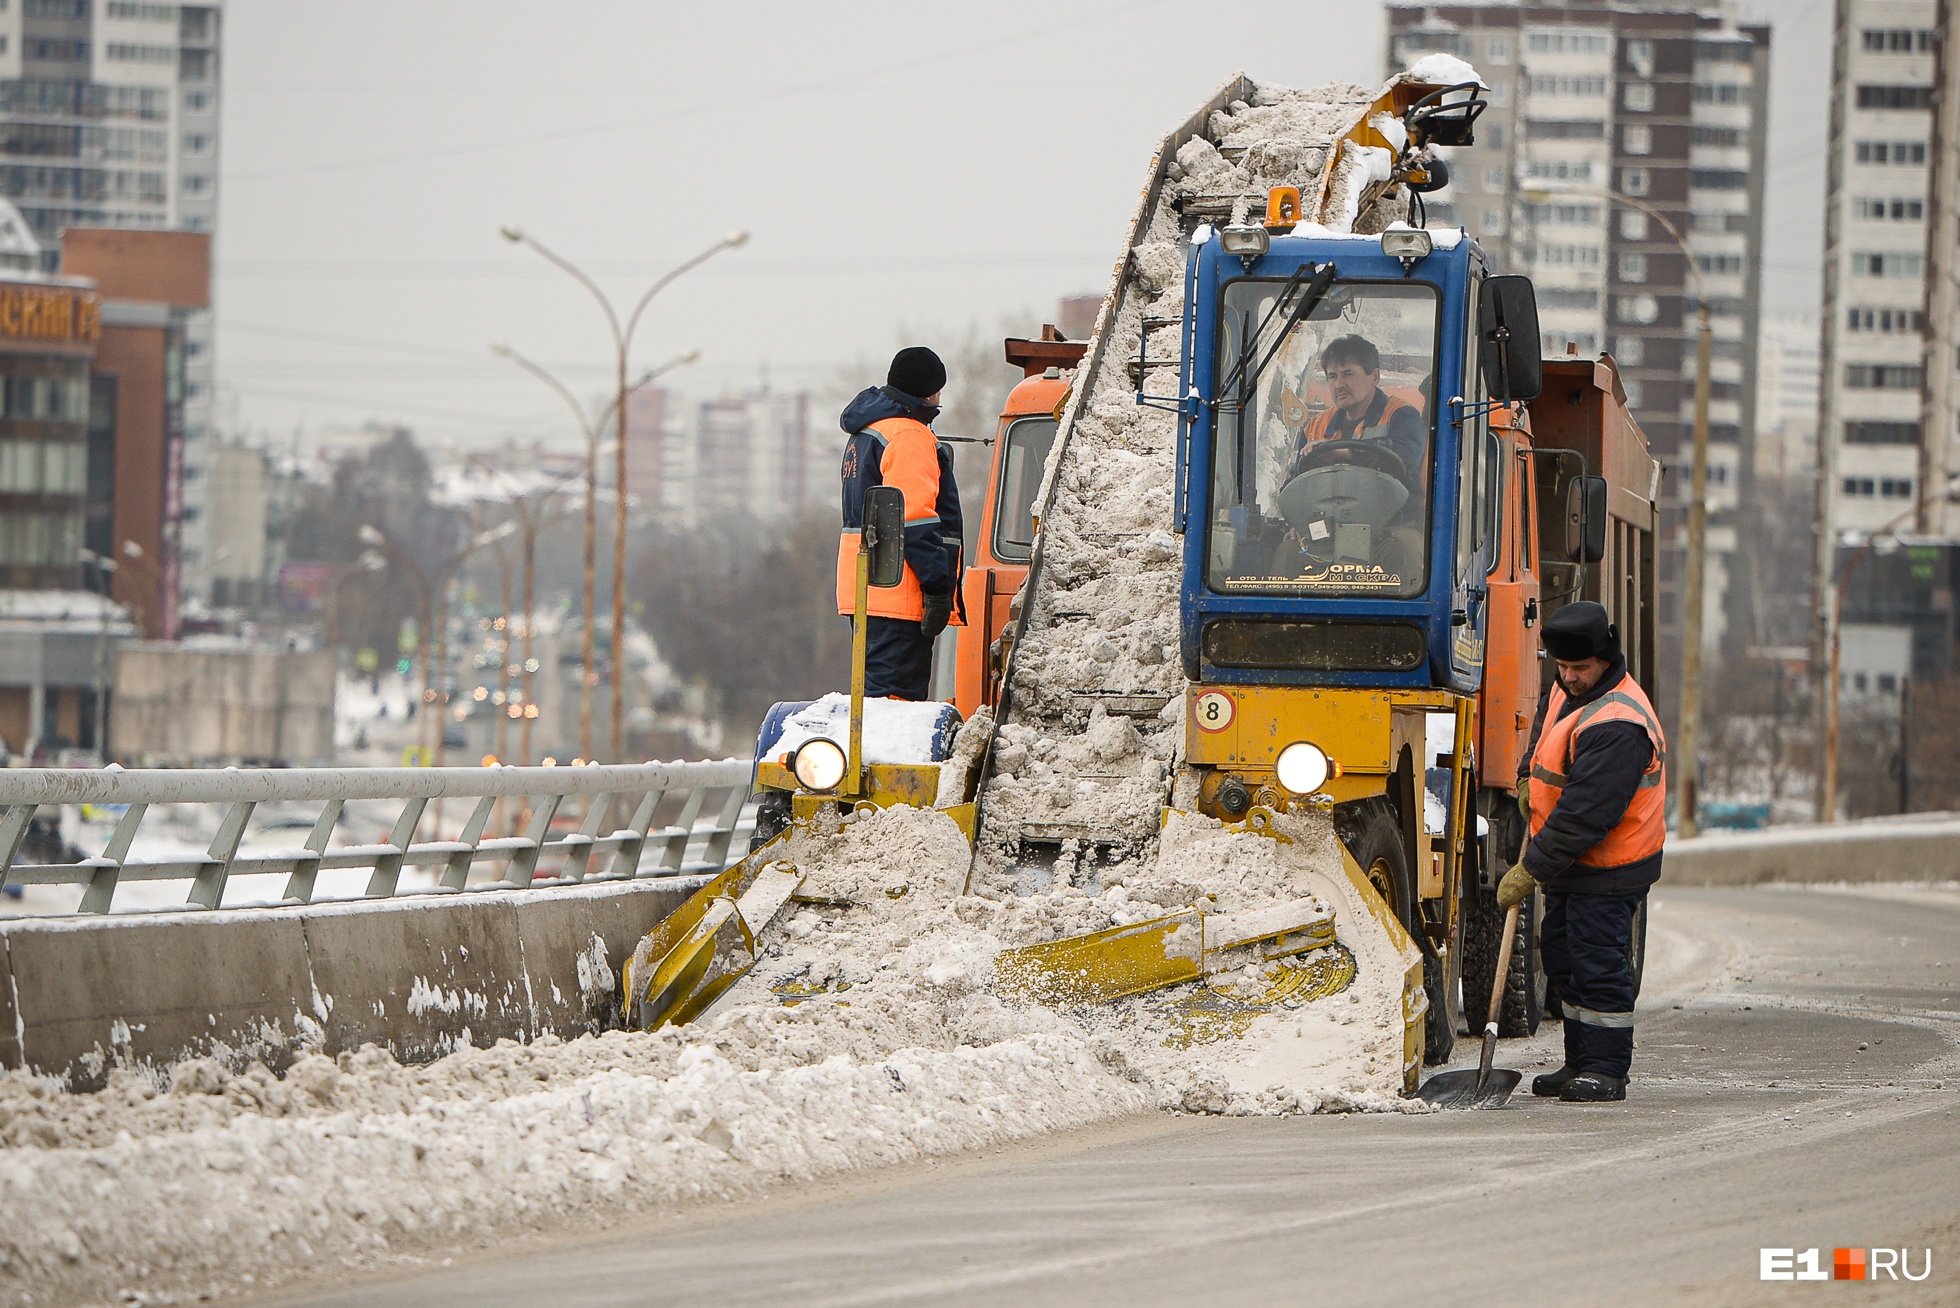 В ночь с понедельника на вторник в Екатеринбурге будут эвакуировать машины, чтобы убрать снег